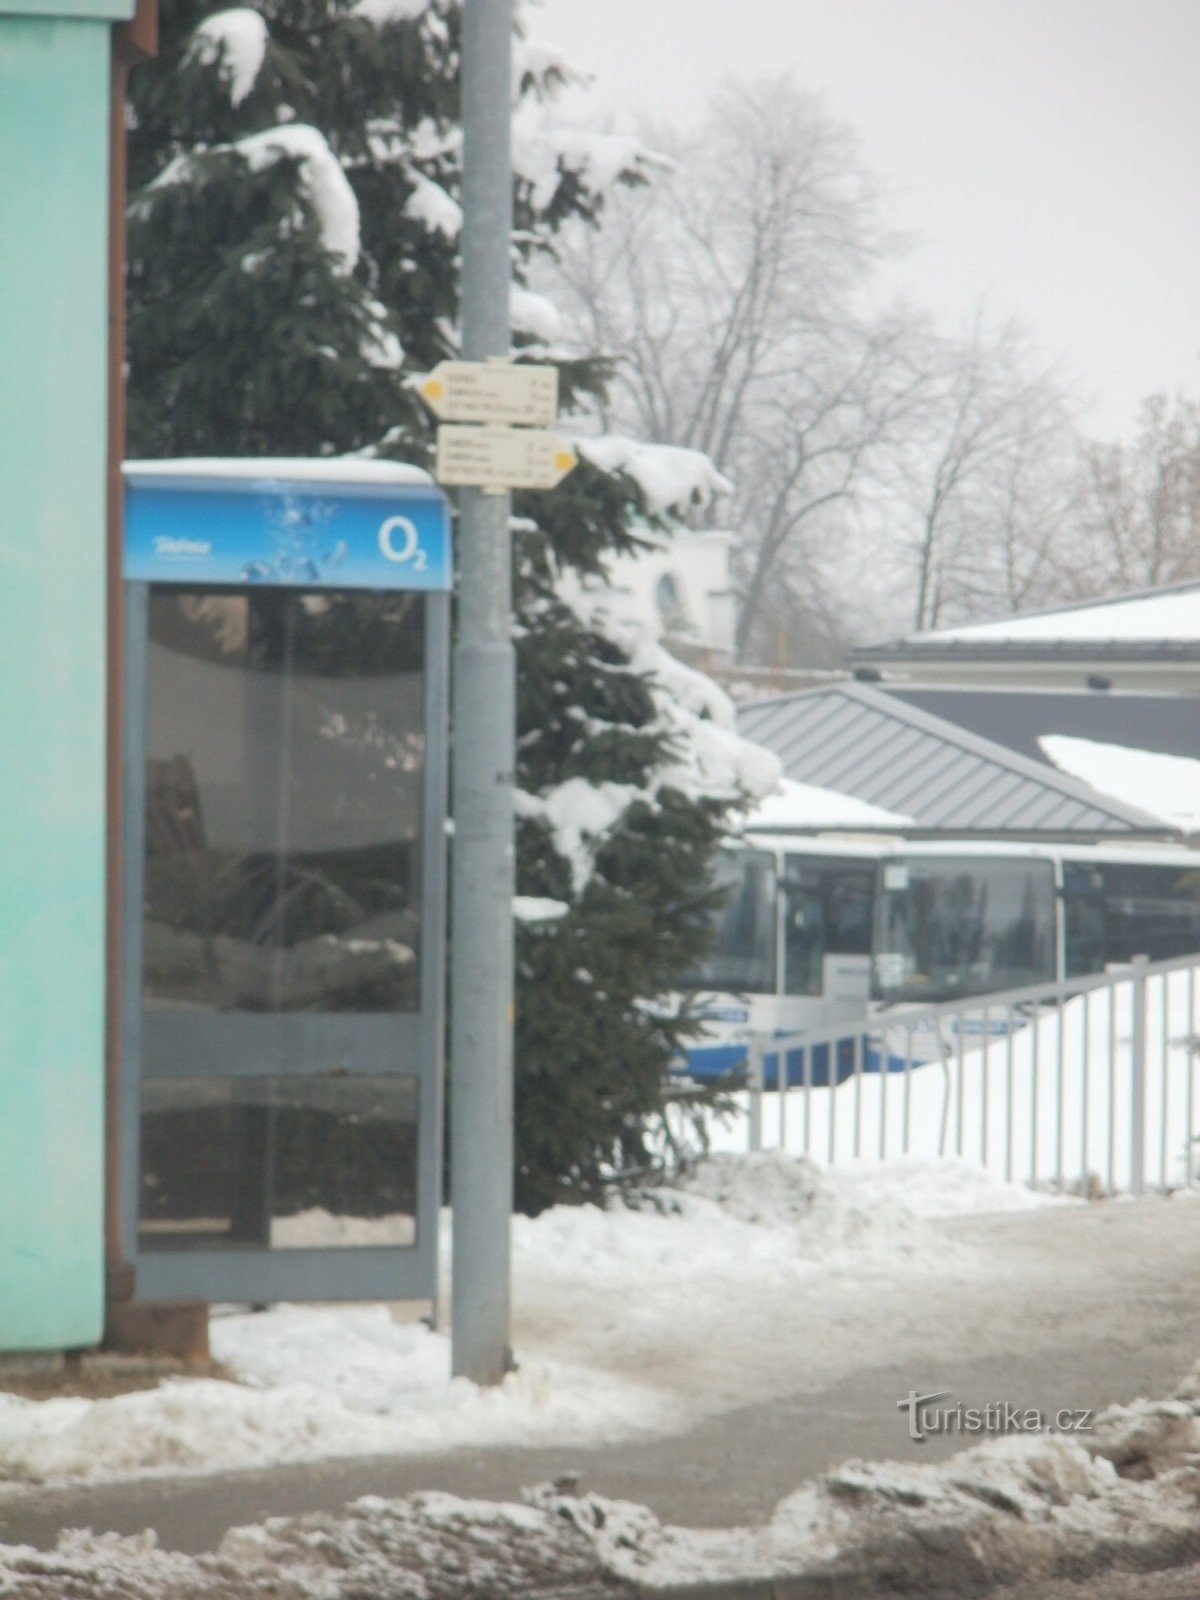 旅游十字路口 Žamberk - 在公交车站